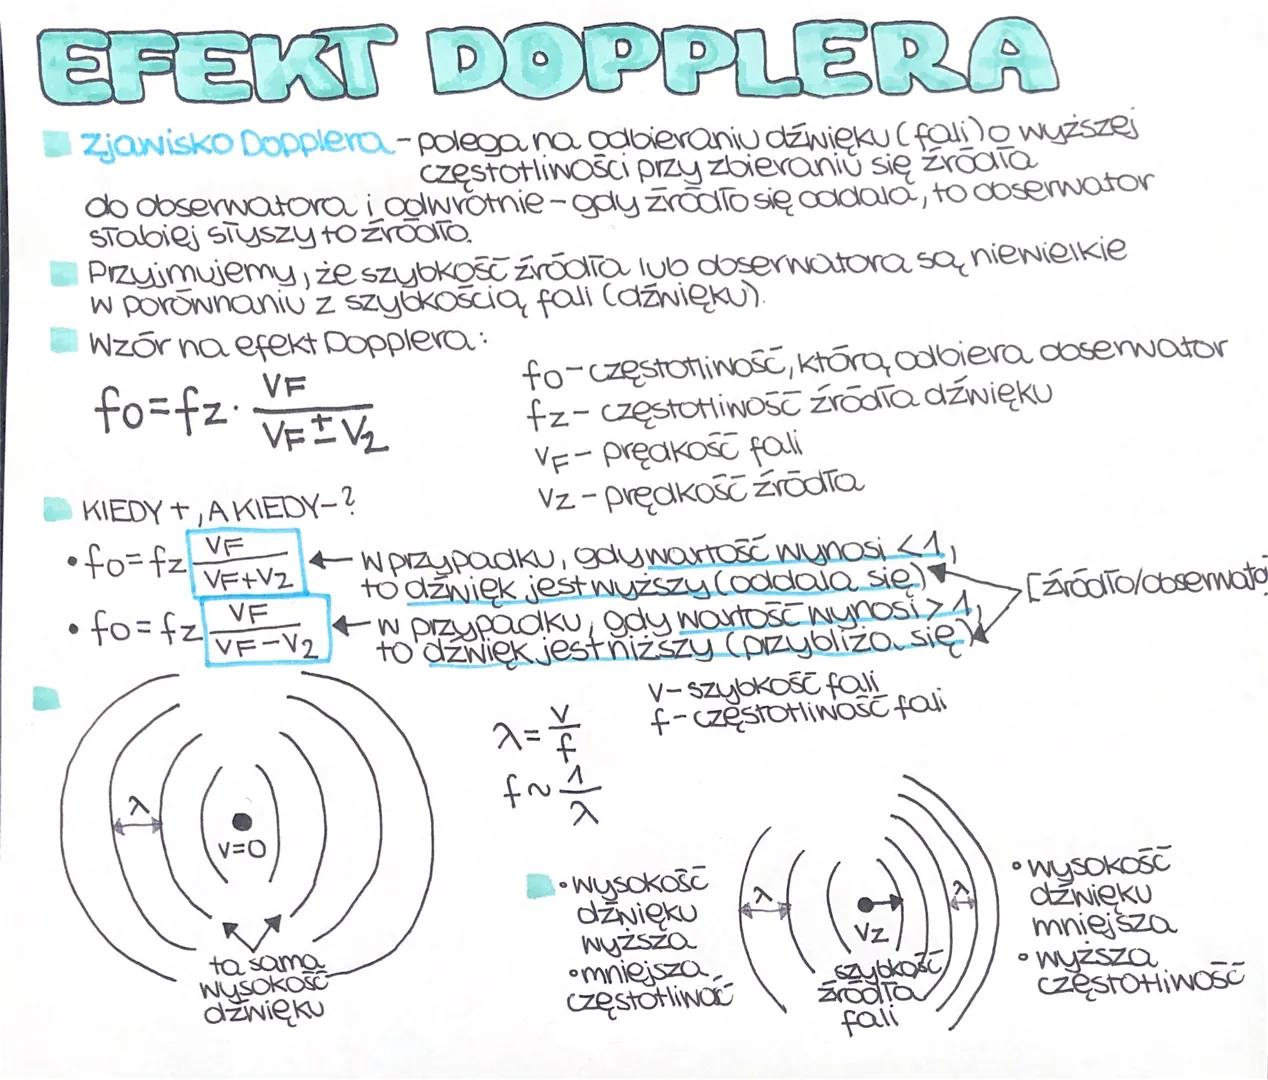 EFEKT DOPPLERA
Zjawisko Dopplera-polega na odbieraniu dźwięku (fali) o wyższej
częstotliwości przy zbieraniu się zrodia
do obserwatora i adw